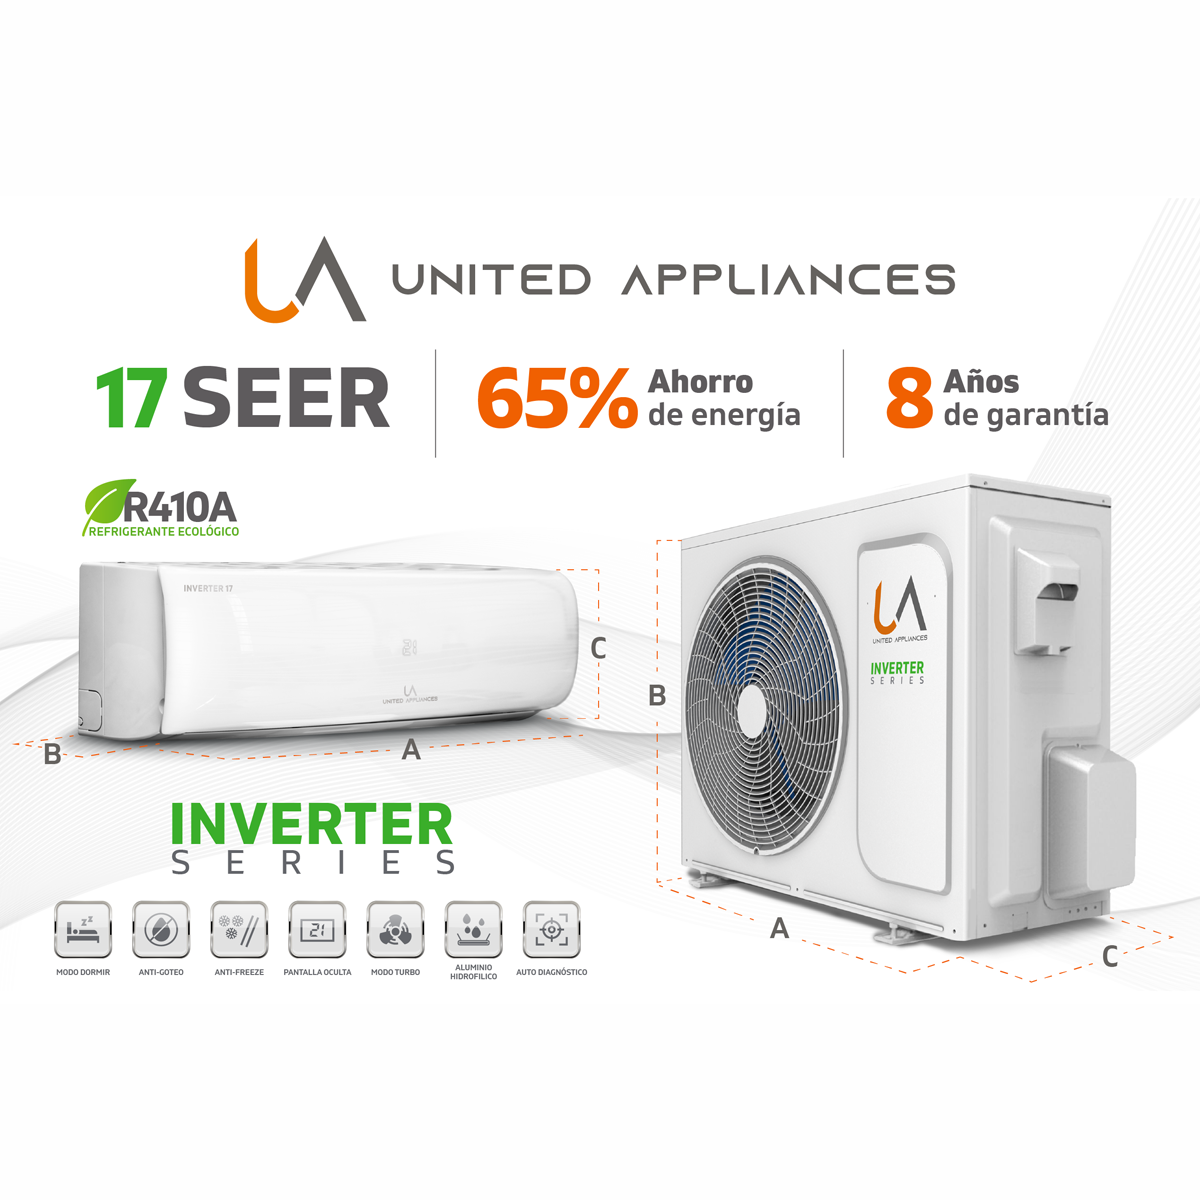 Minisplit Inverter United Appliances